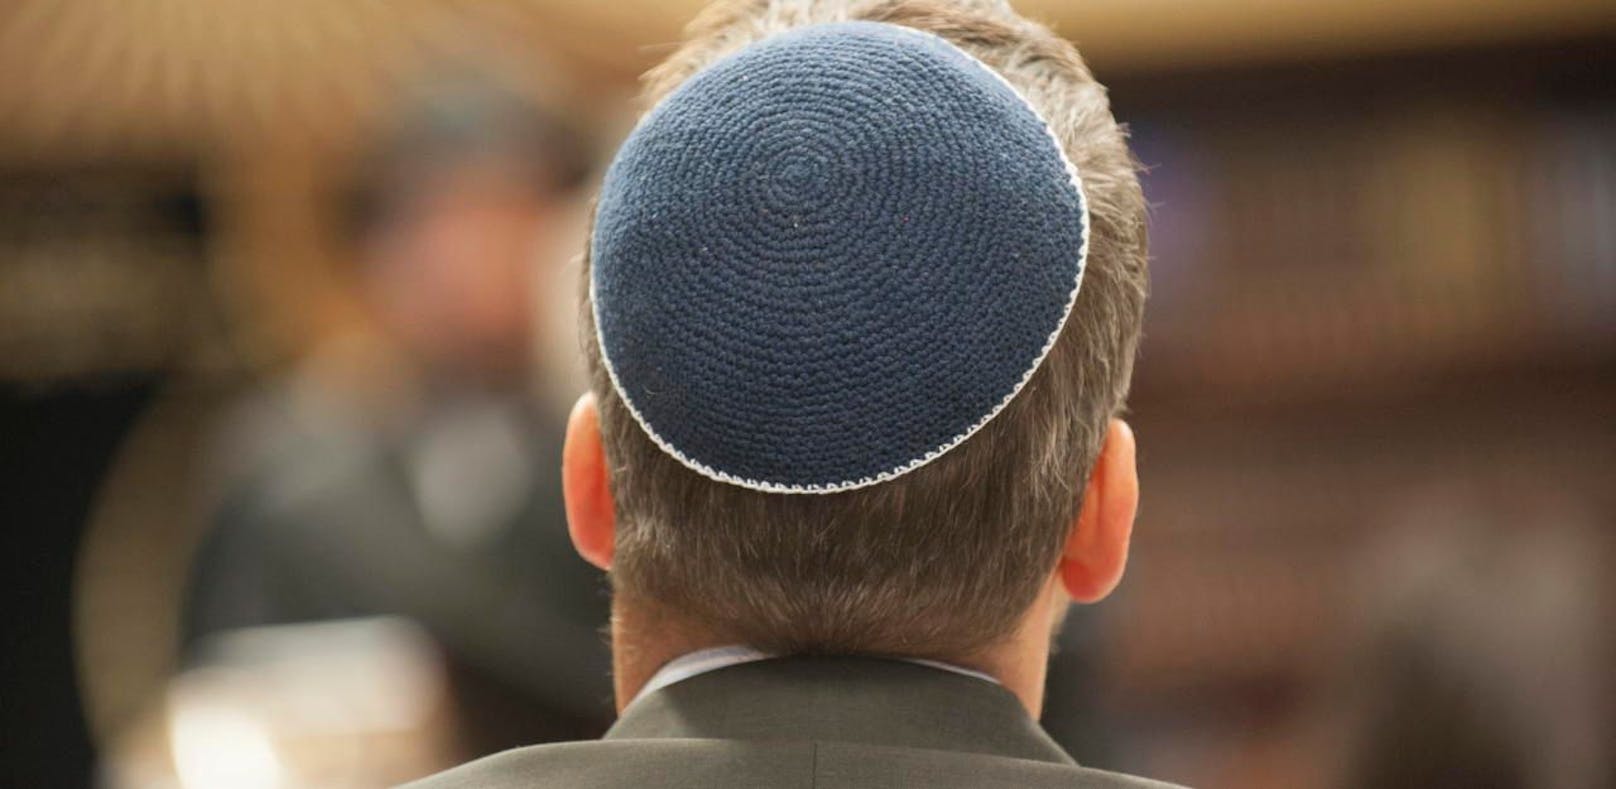 Immer wieder werden Juden, die öffentlich die Kippa tragen, Ziel von antisemitischen Übergriffen.